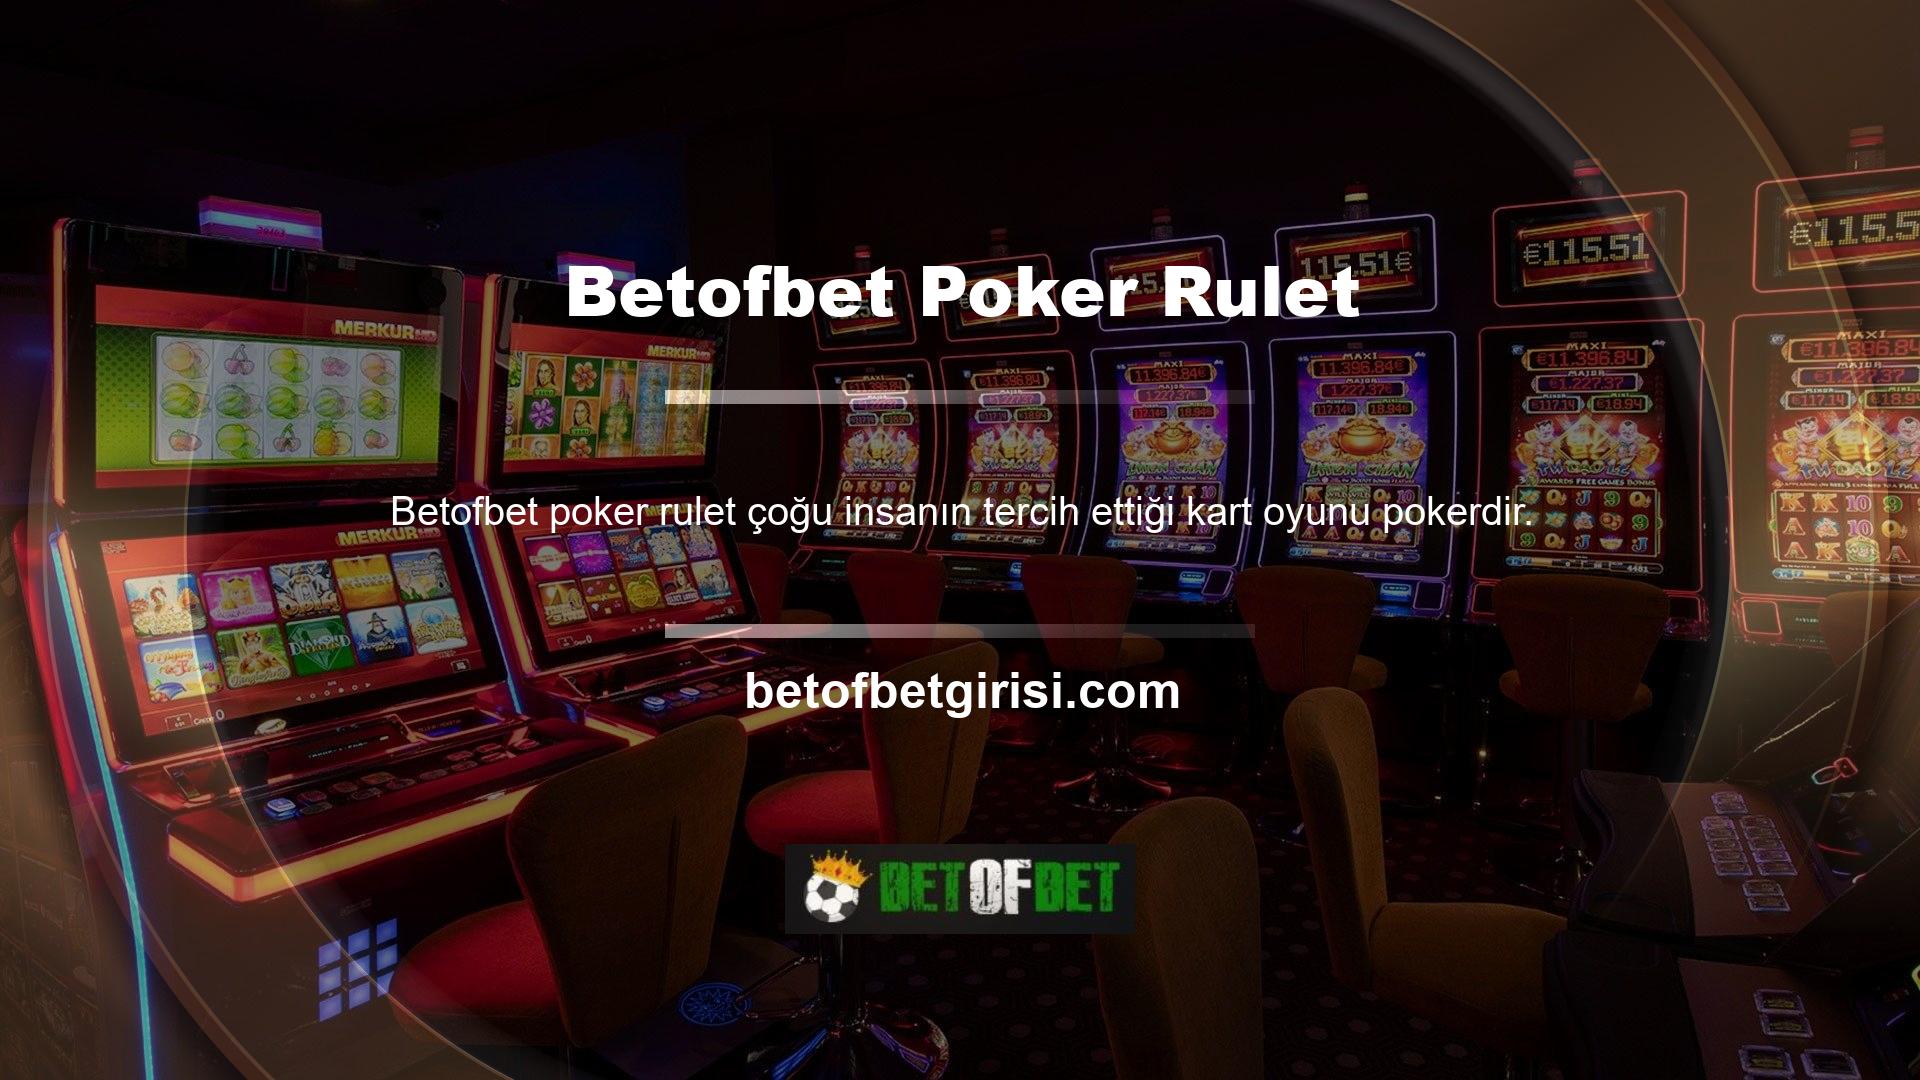 Betofbet poker ruletinin birkaç farklı çeşidi mevcuttur